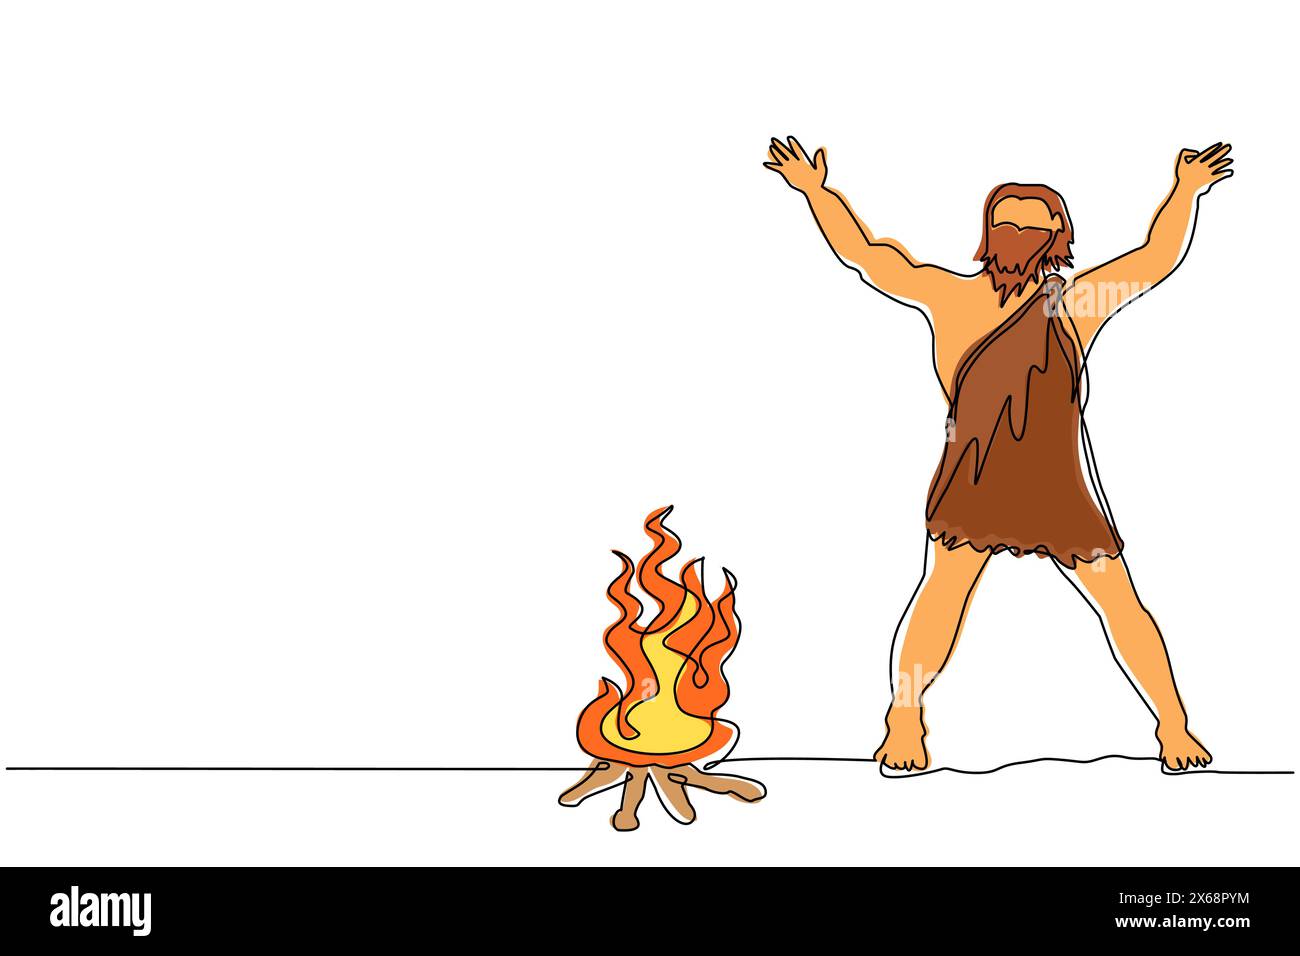 Linea singola continua che disegna un uomo preistorico in piedi intorno al falò. Caveman si alza e alza due mani intorno al fuoco. Riscalda il suo corpo Illustrazione Vettoriale